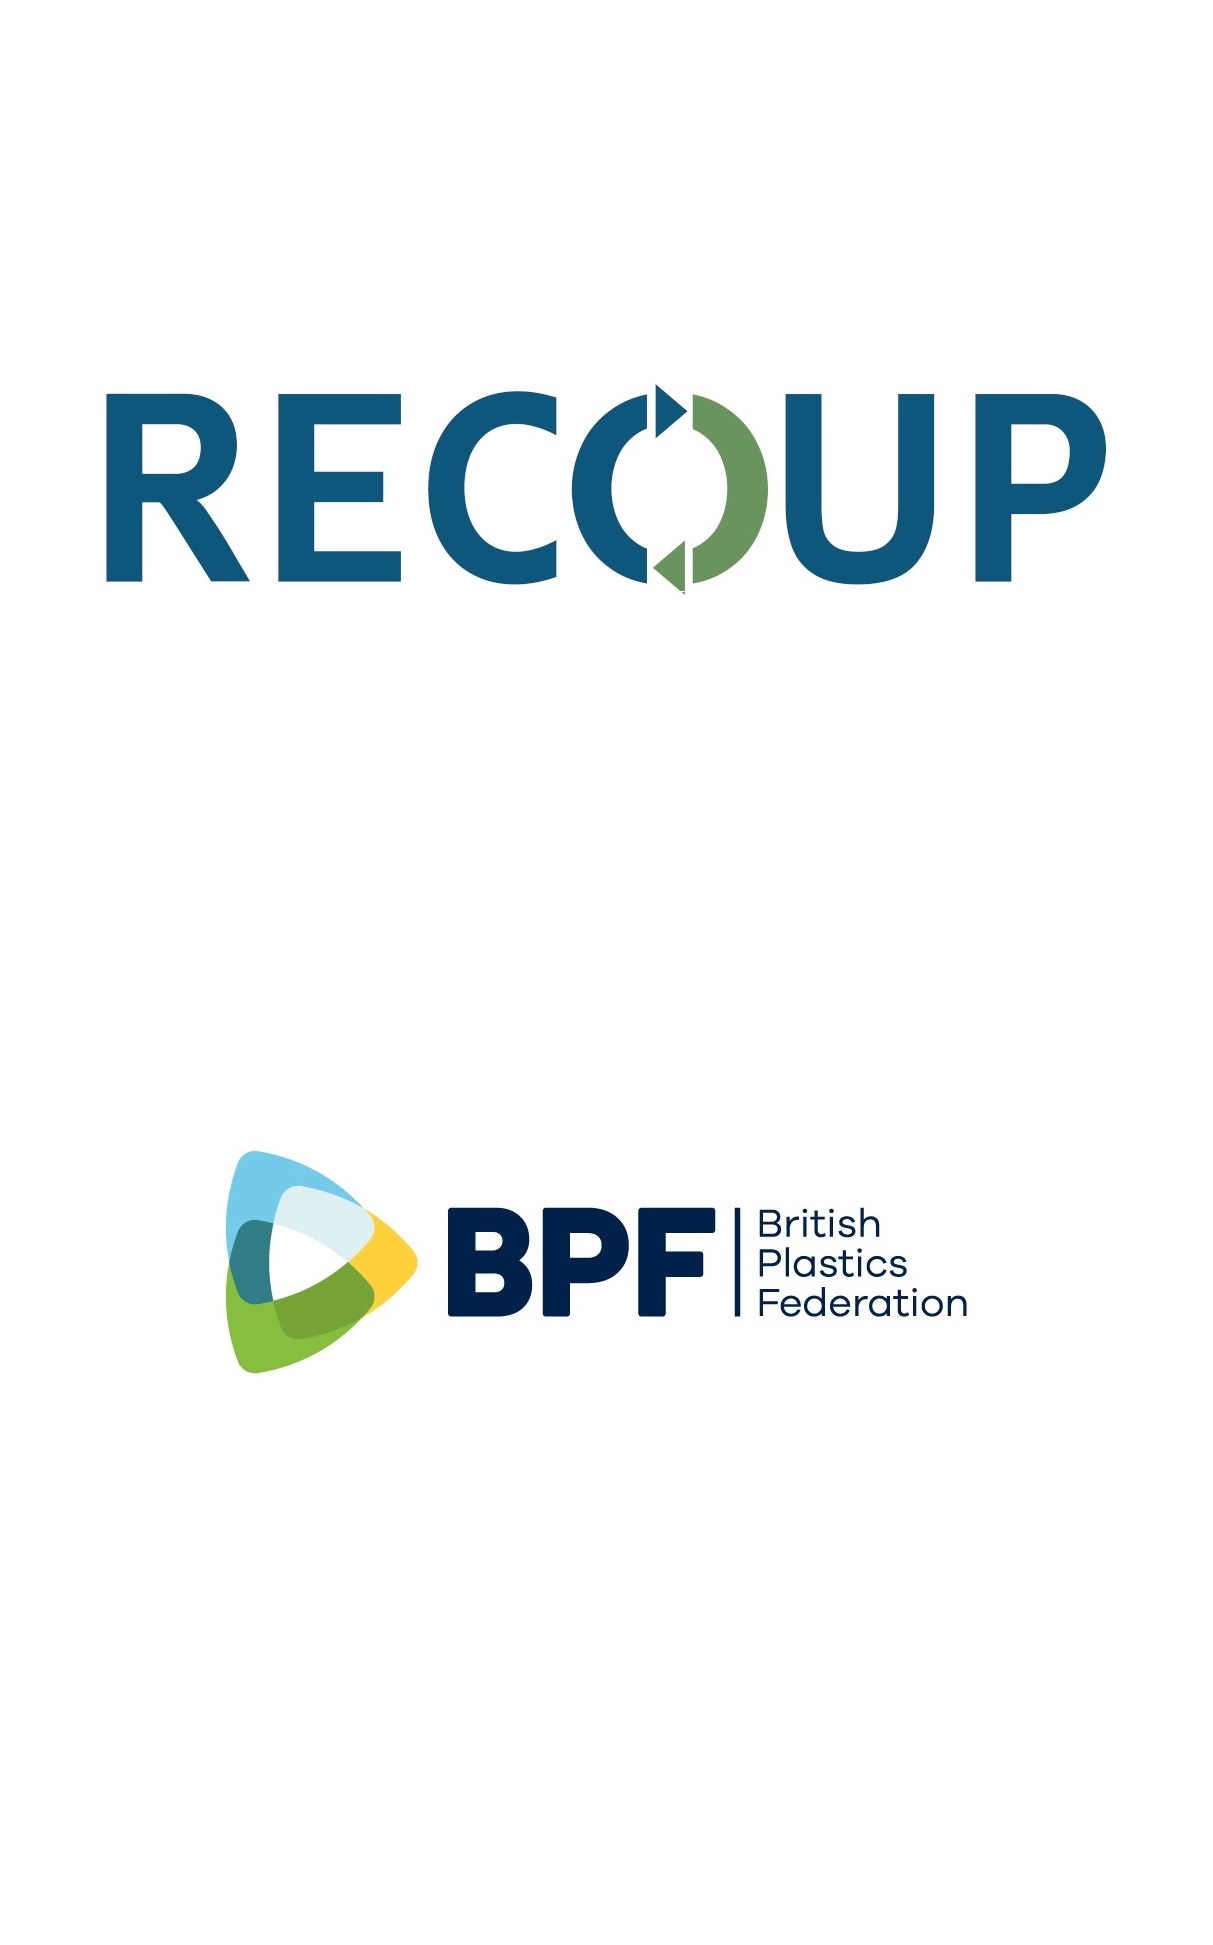 RECOUP BPF Logos